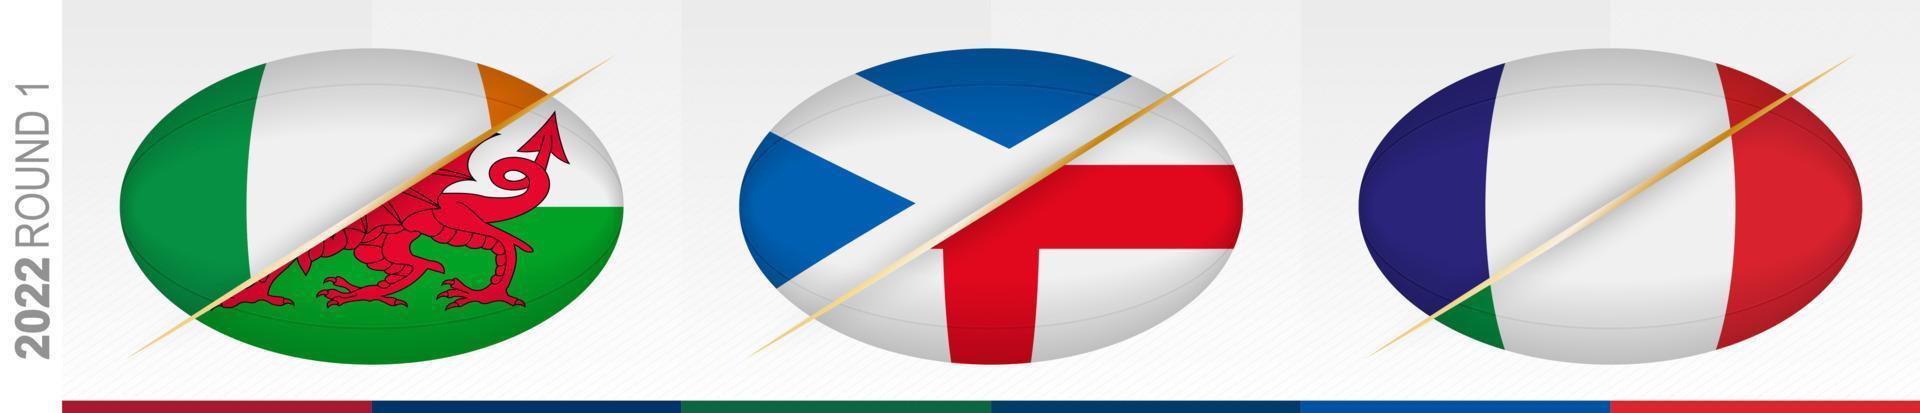 rugbymatcher i omgång ett Irland mot Wales, Skottland mot England, Frankrike mot Italien. koncept för rugbyturnering. vektor